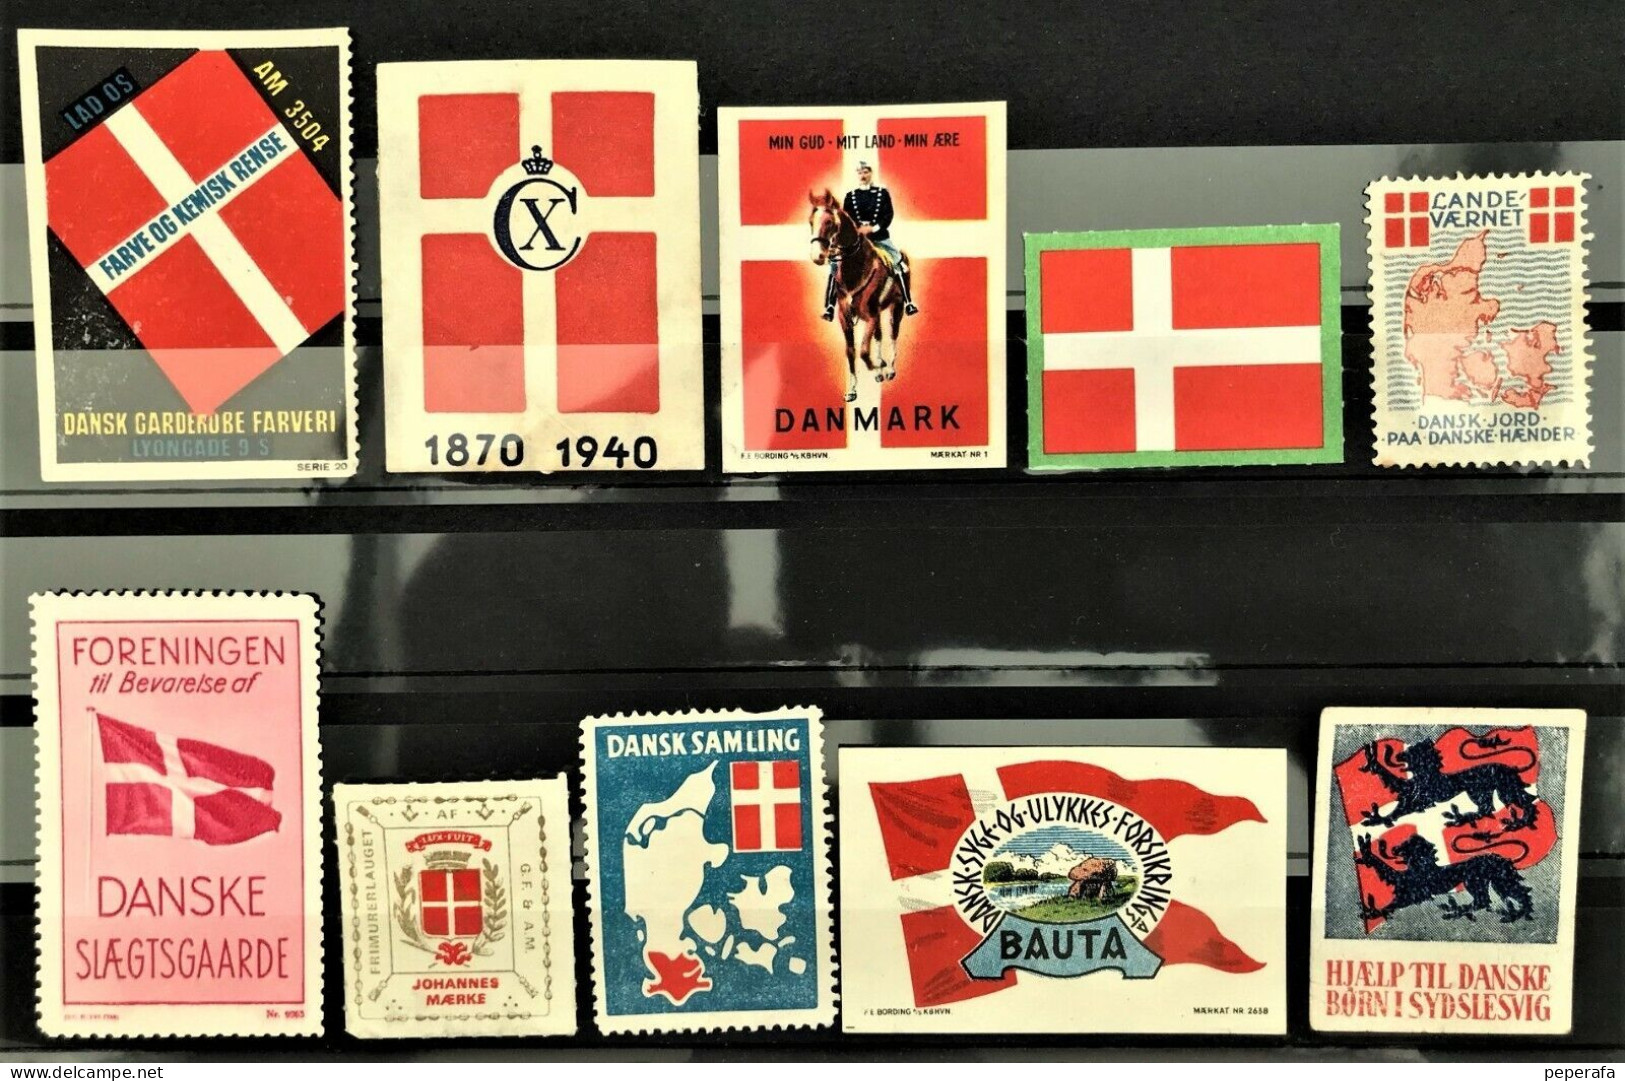 Denmark, COLLECTION Poster Stamp Mærke Cinderella Vignette, DANNEBROG DANSK (16) - Errors, Freaks & Oddities (EFO)